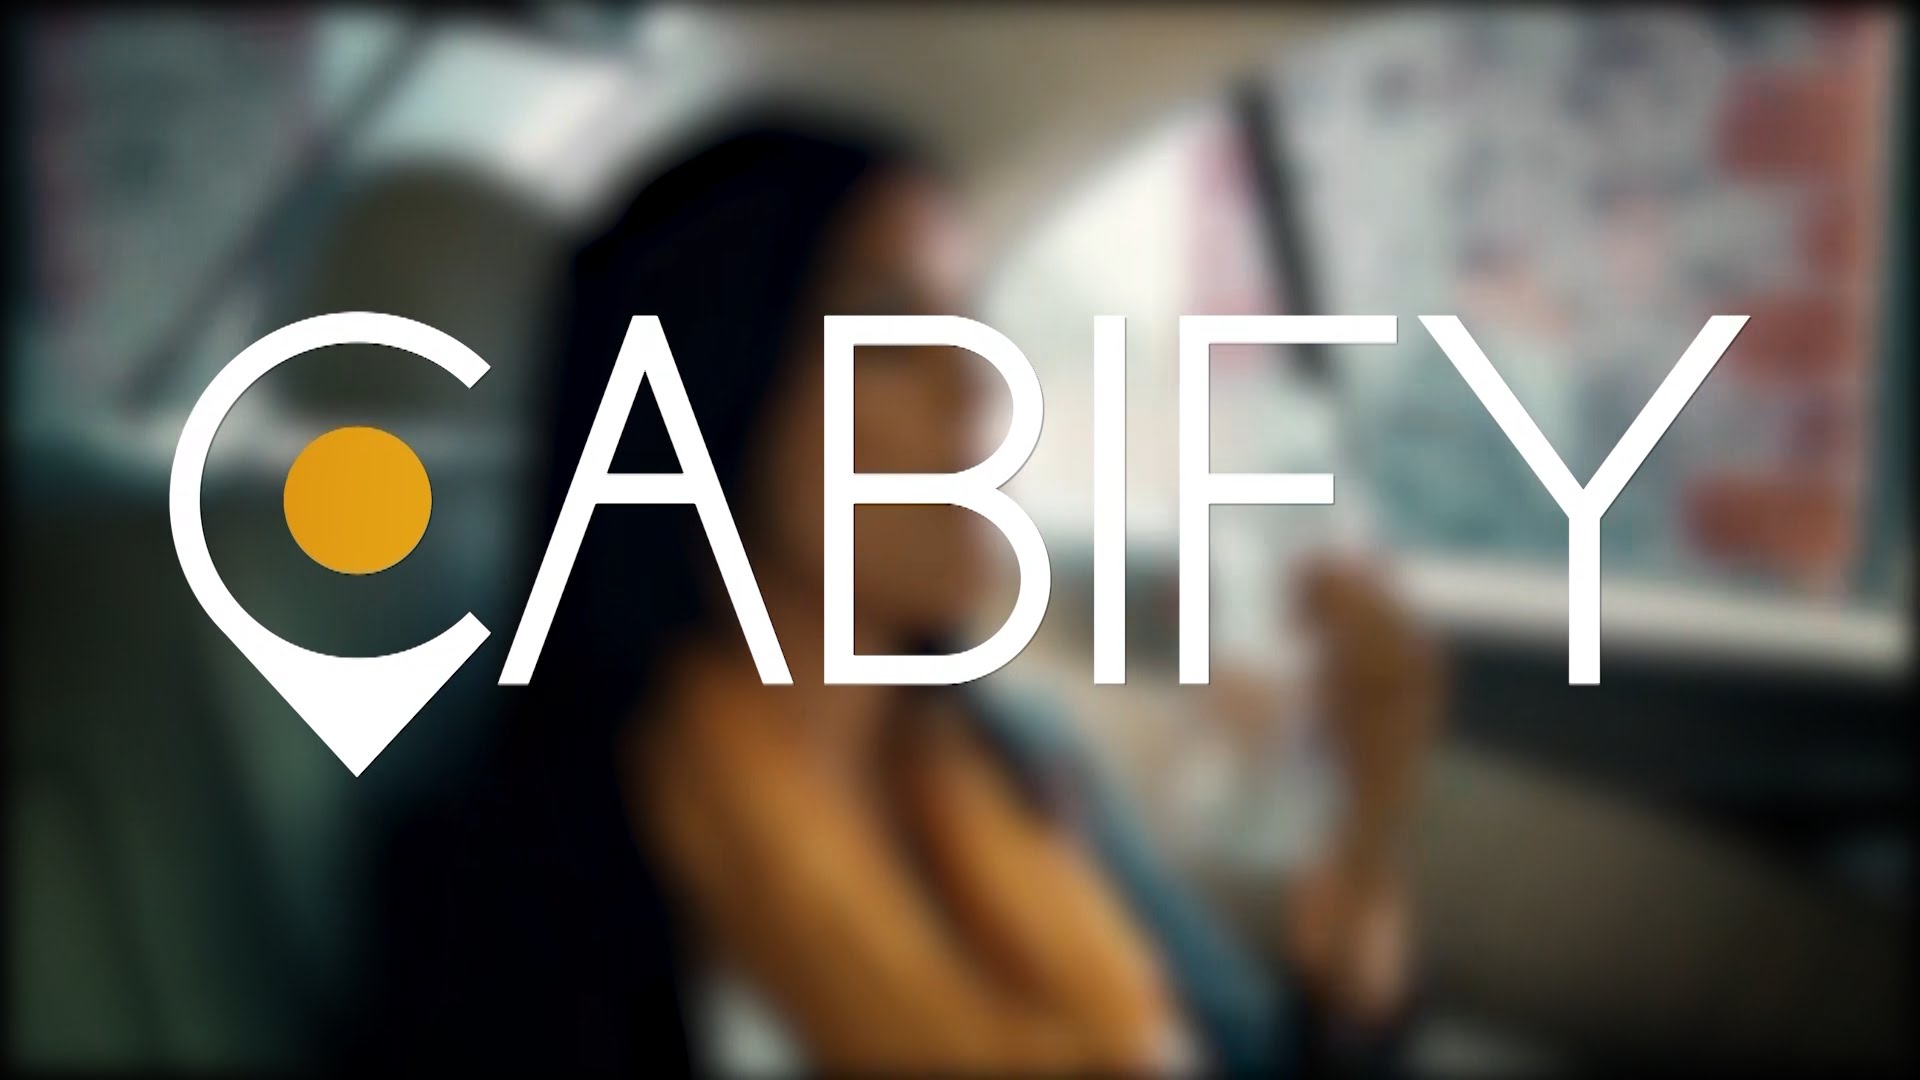 El servicio de Cabify consiste en prestar un servicio individual de pasajeros en vehículos de transporte especial, por tal razón se impuso la sanción. (Youtube)